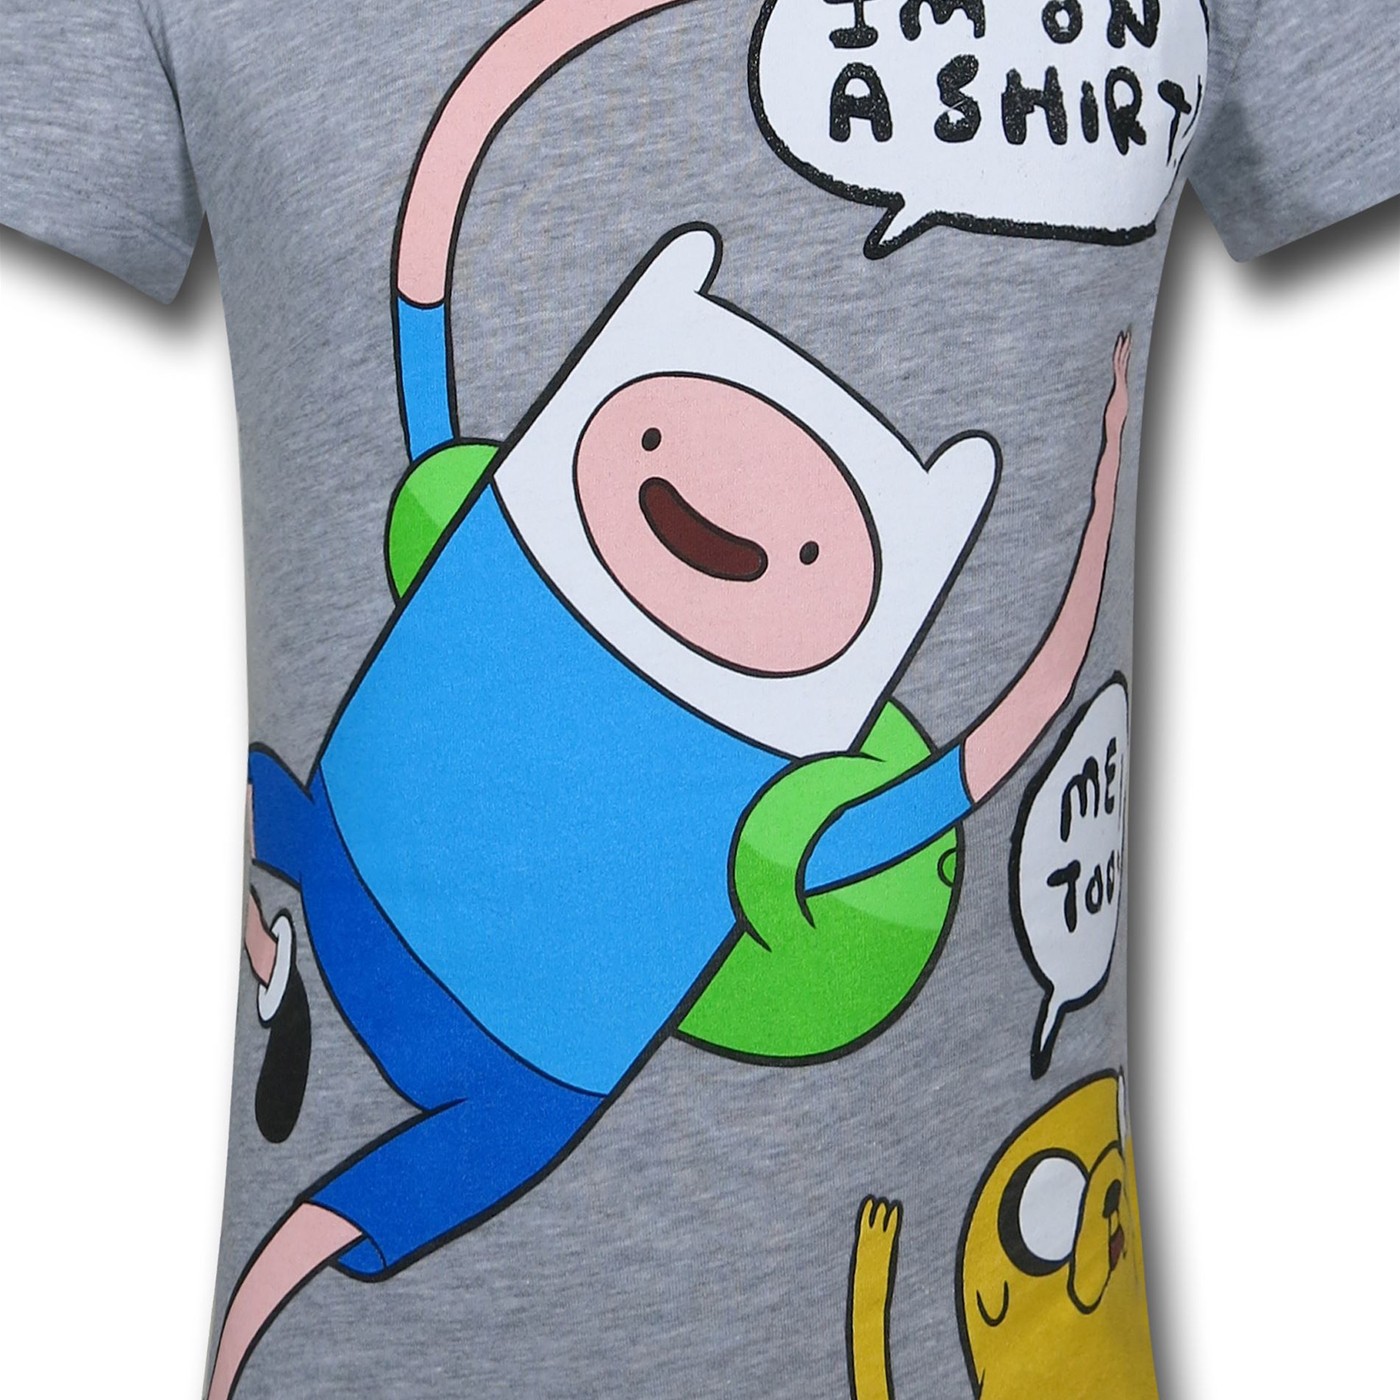 Adventure Time Shirt Buddies Girls Kids T-Shirt